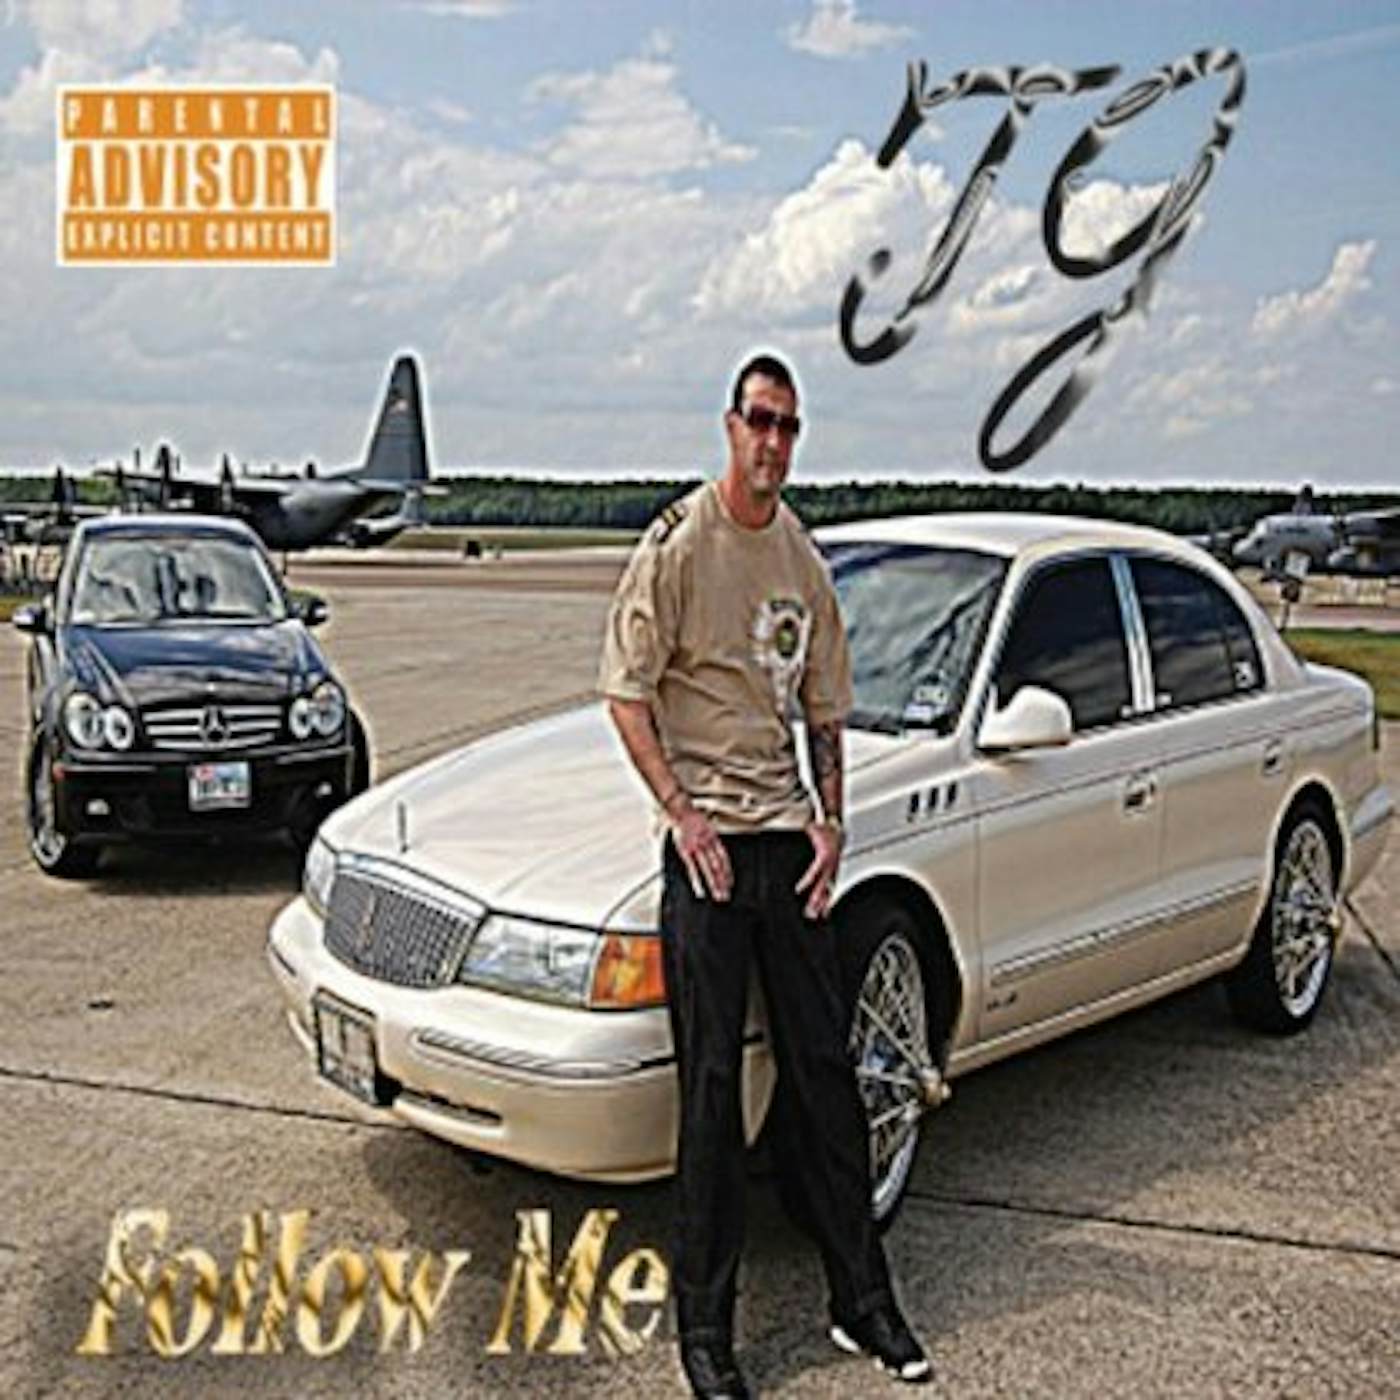 TJ FOLLOW ME CD